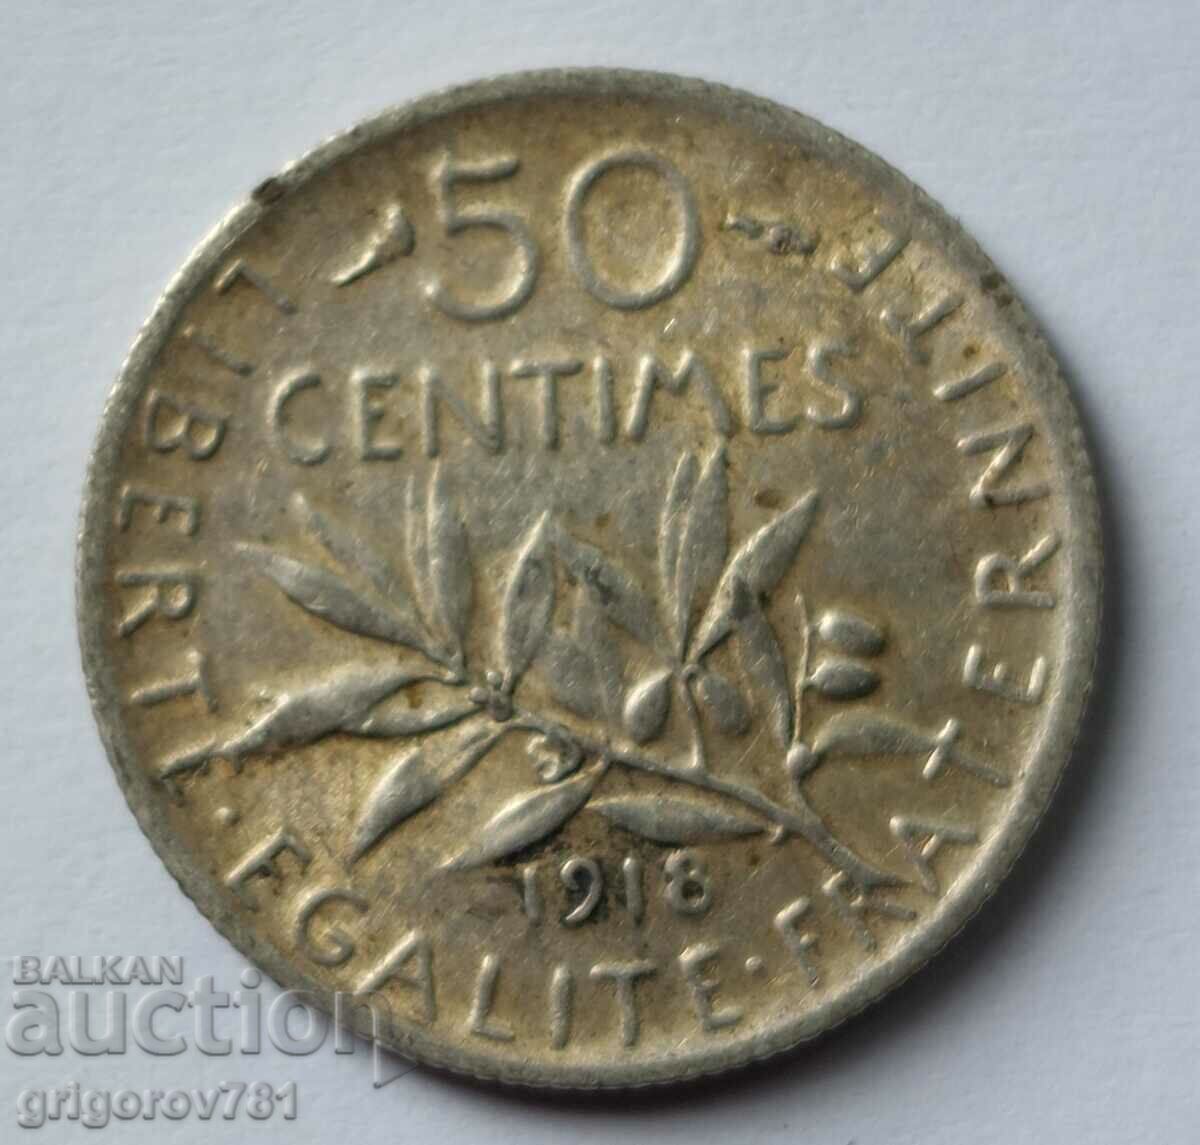 Ασημένιο 50 εκατοστά Γαλλία 1918 - ασημένιο νόμισμα №24